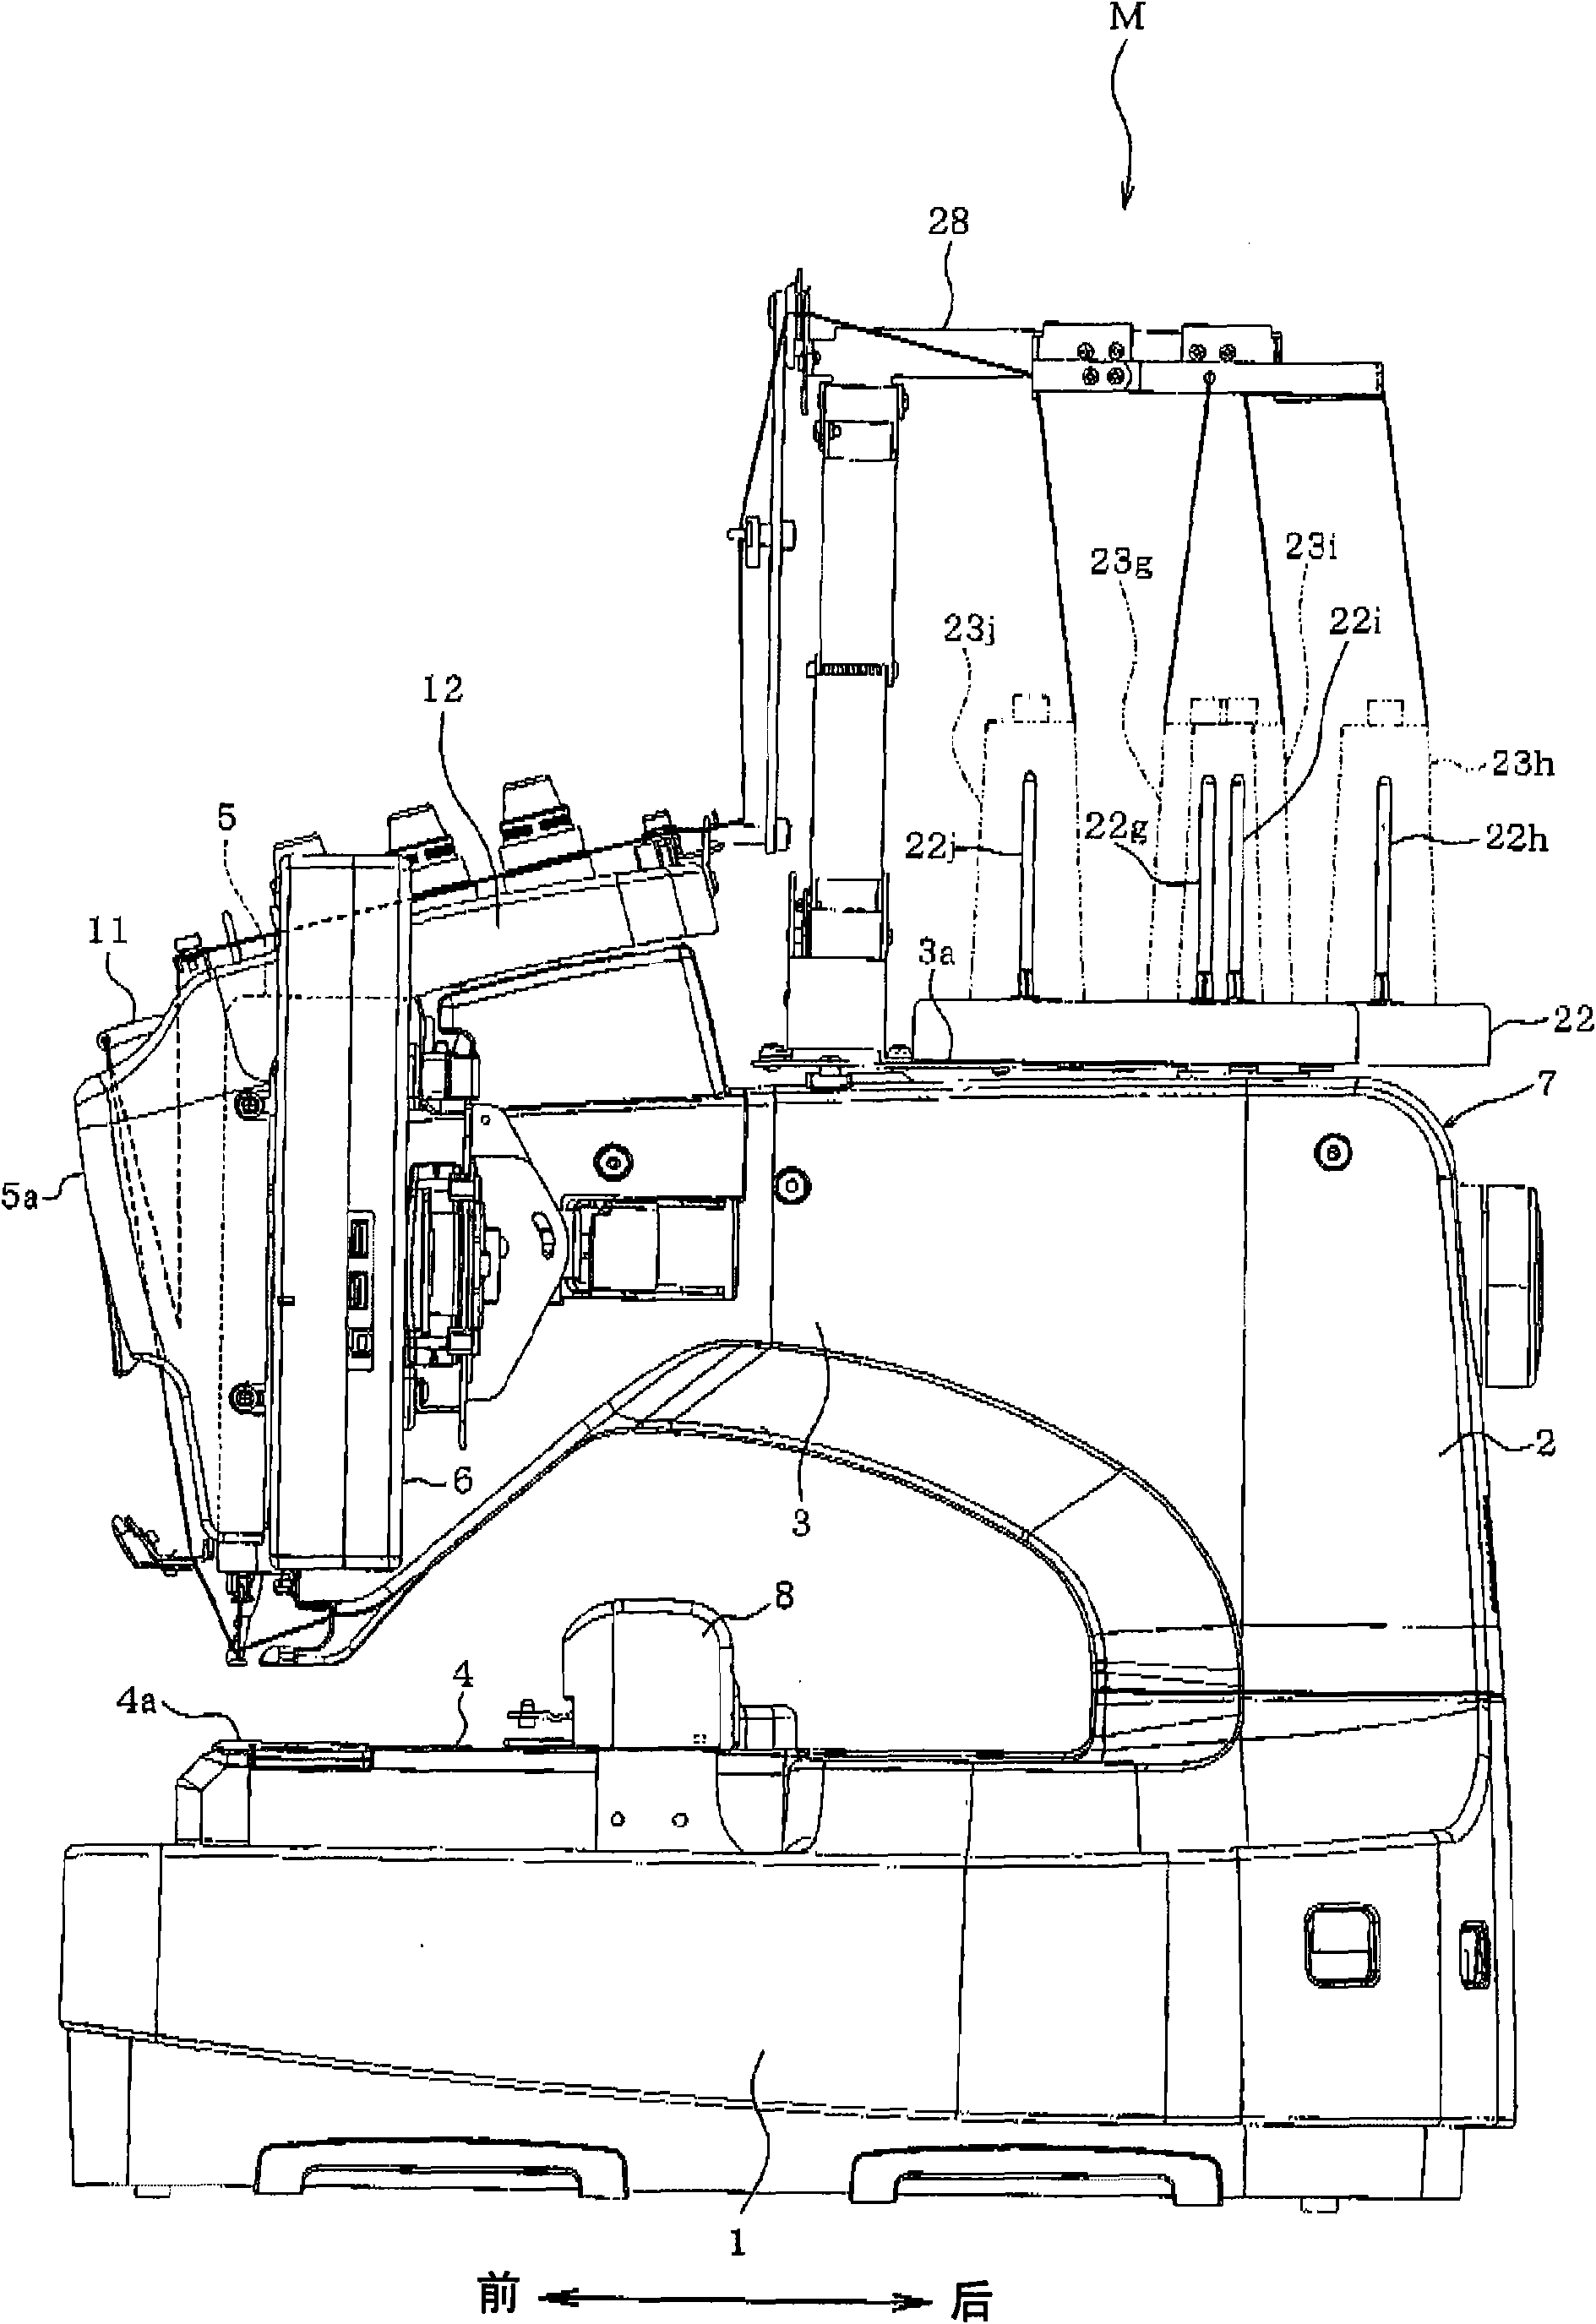 Multi-needle sewing machine